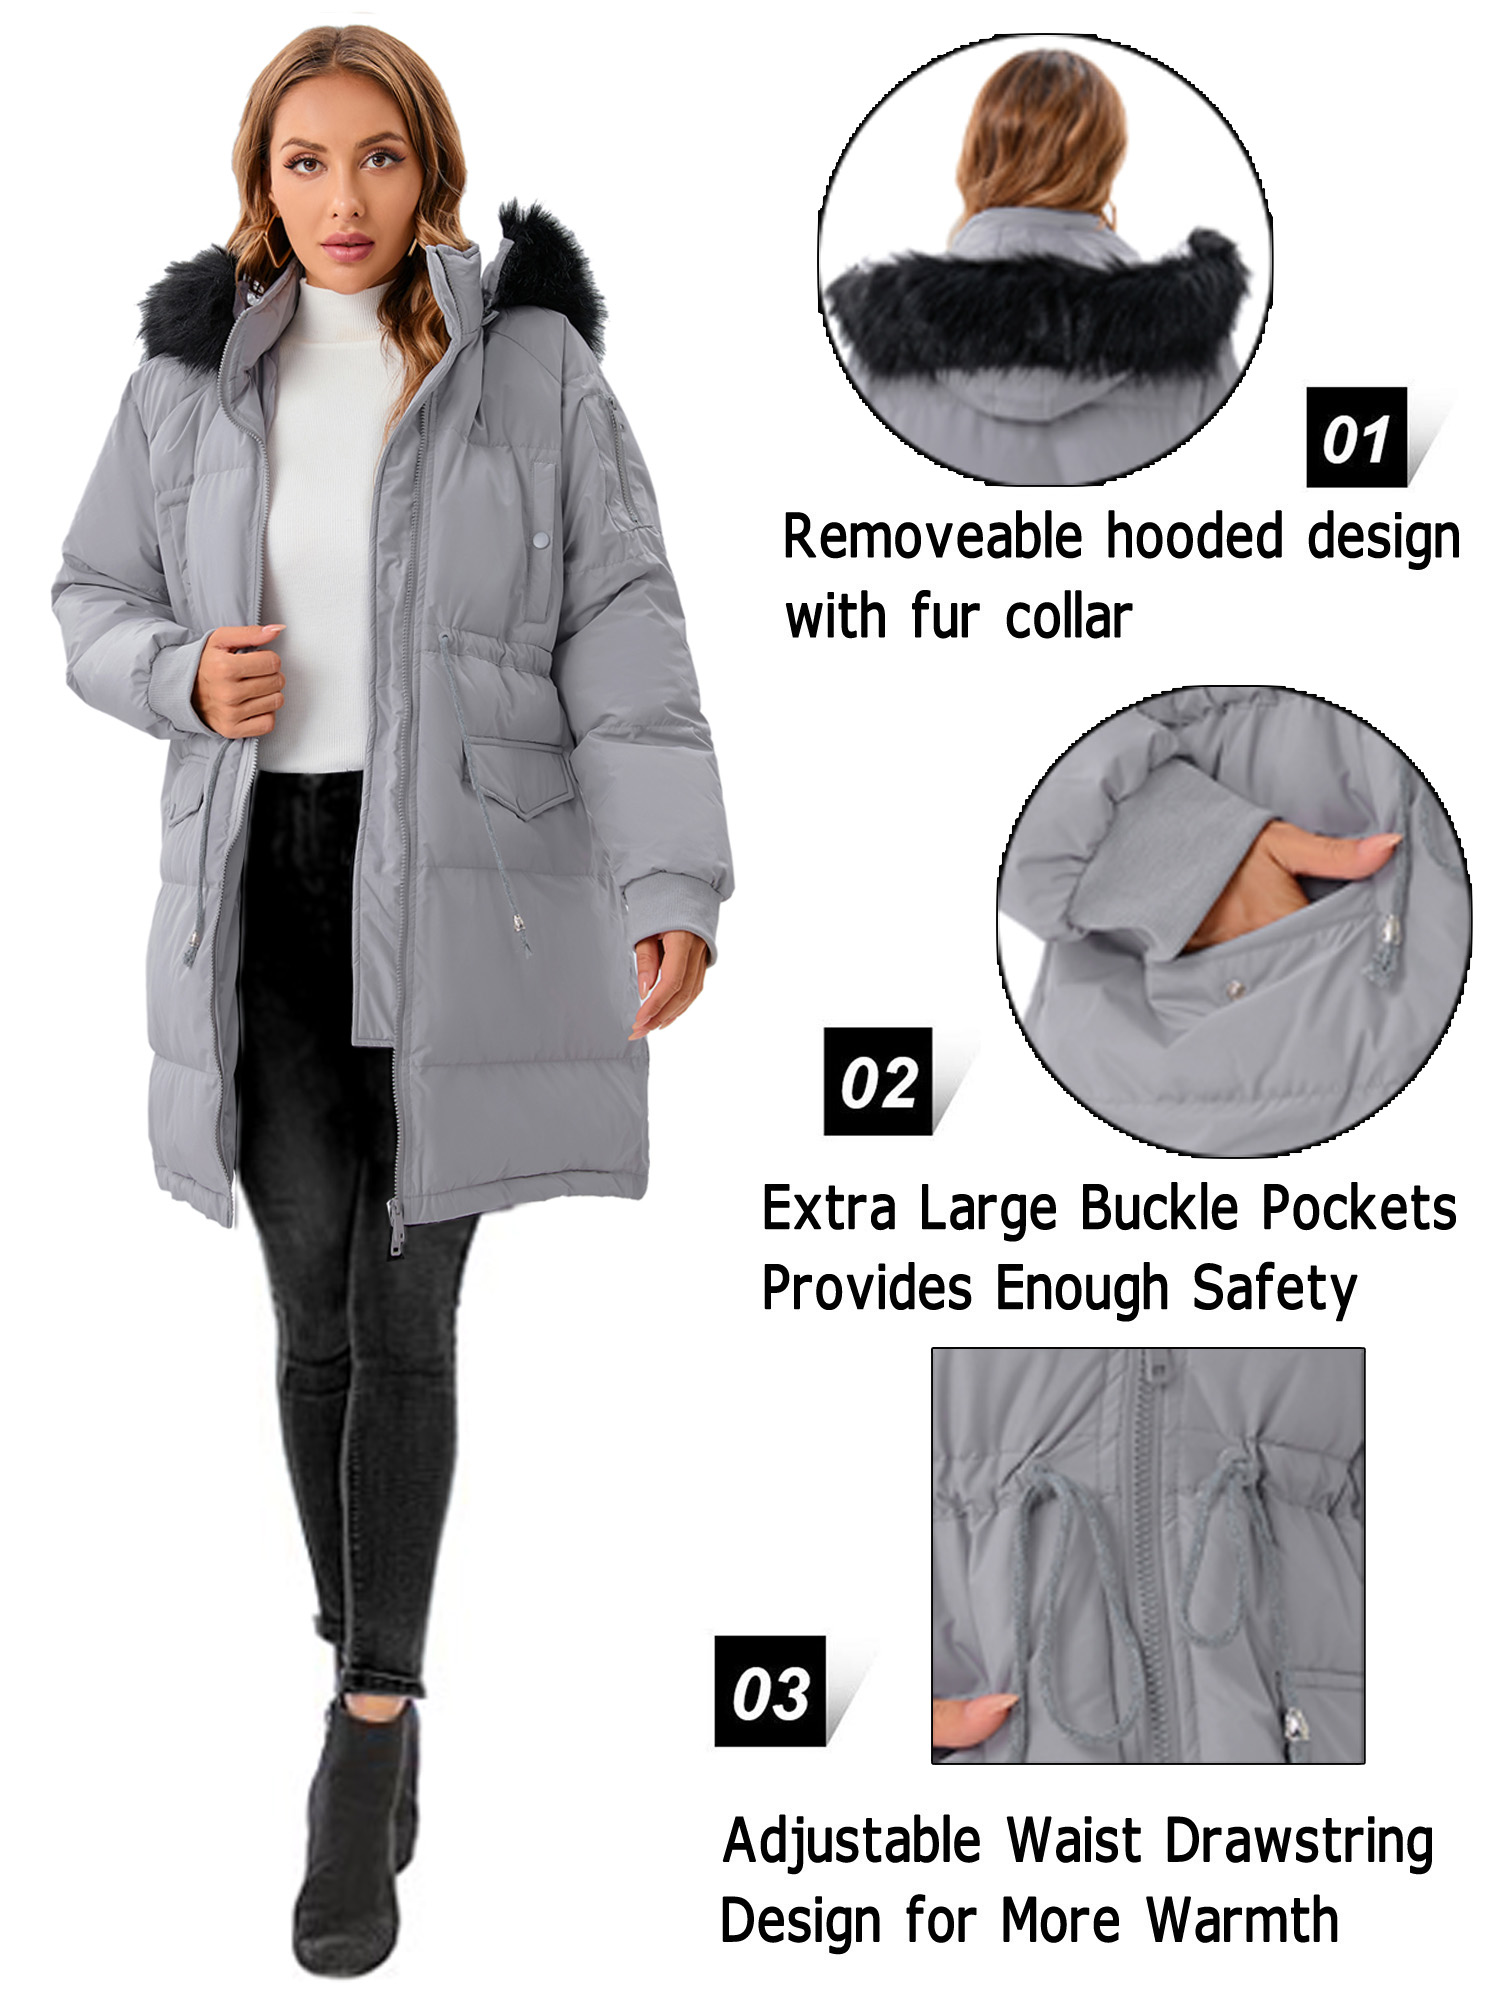 LELINTA Women's Heayweight Winter Warm Puffer Jacket Waterproof Rain Zip Parka Overcoats Jacket With Faux Fur Hooded - image 5 of 7